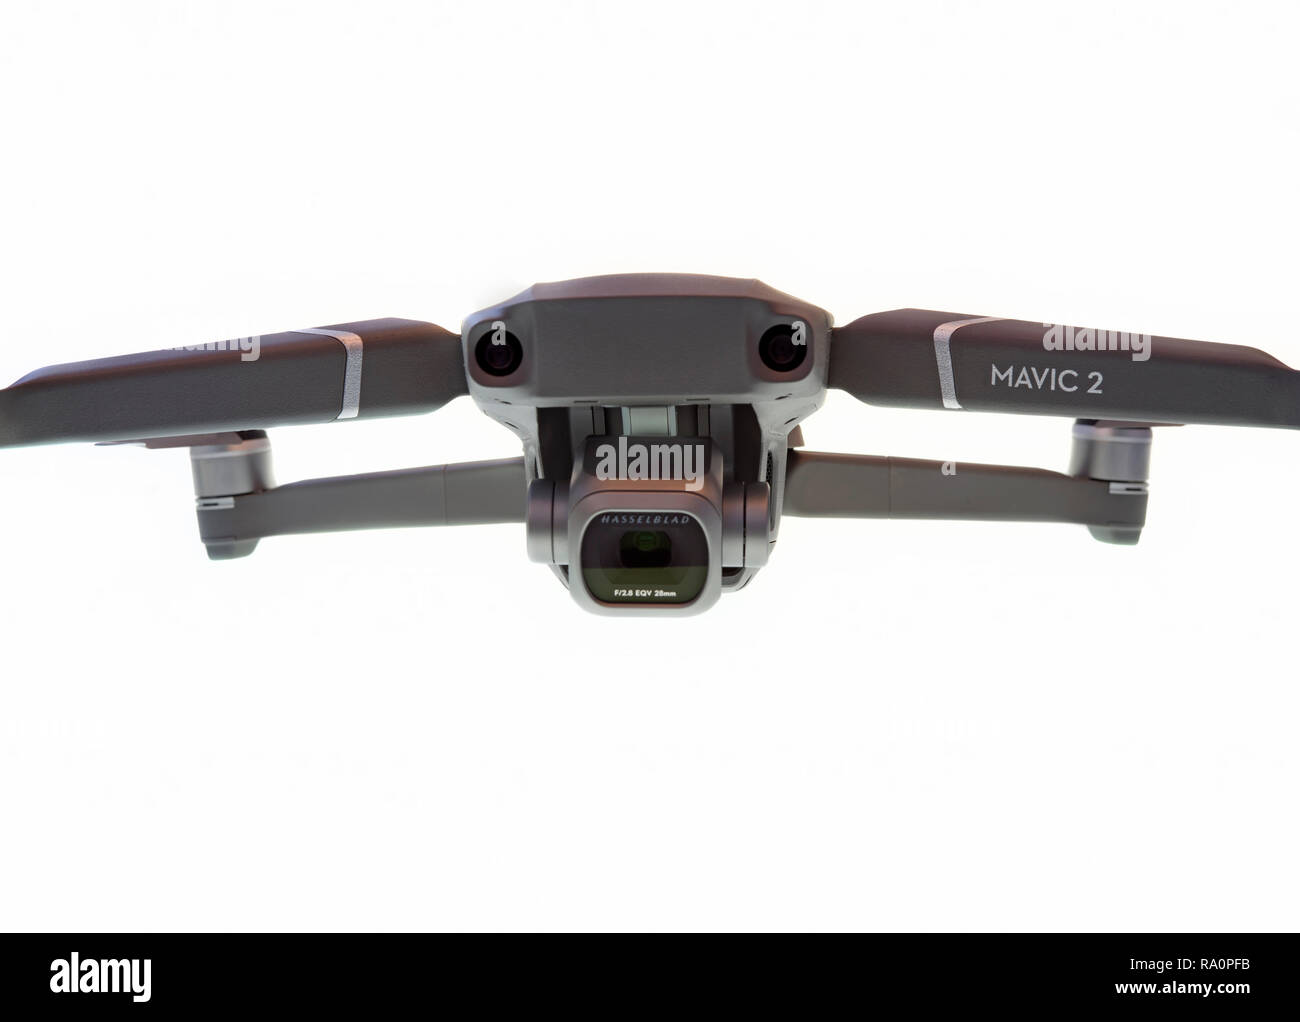 PIATRA Neamt, Roumanie - 12 octobre 2018 : 2 Mavic Pro drone avec appareil photo Hasselblad. Banque D'Images